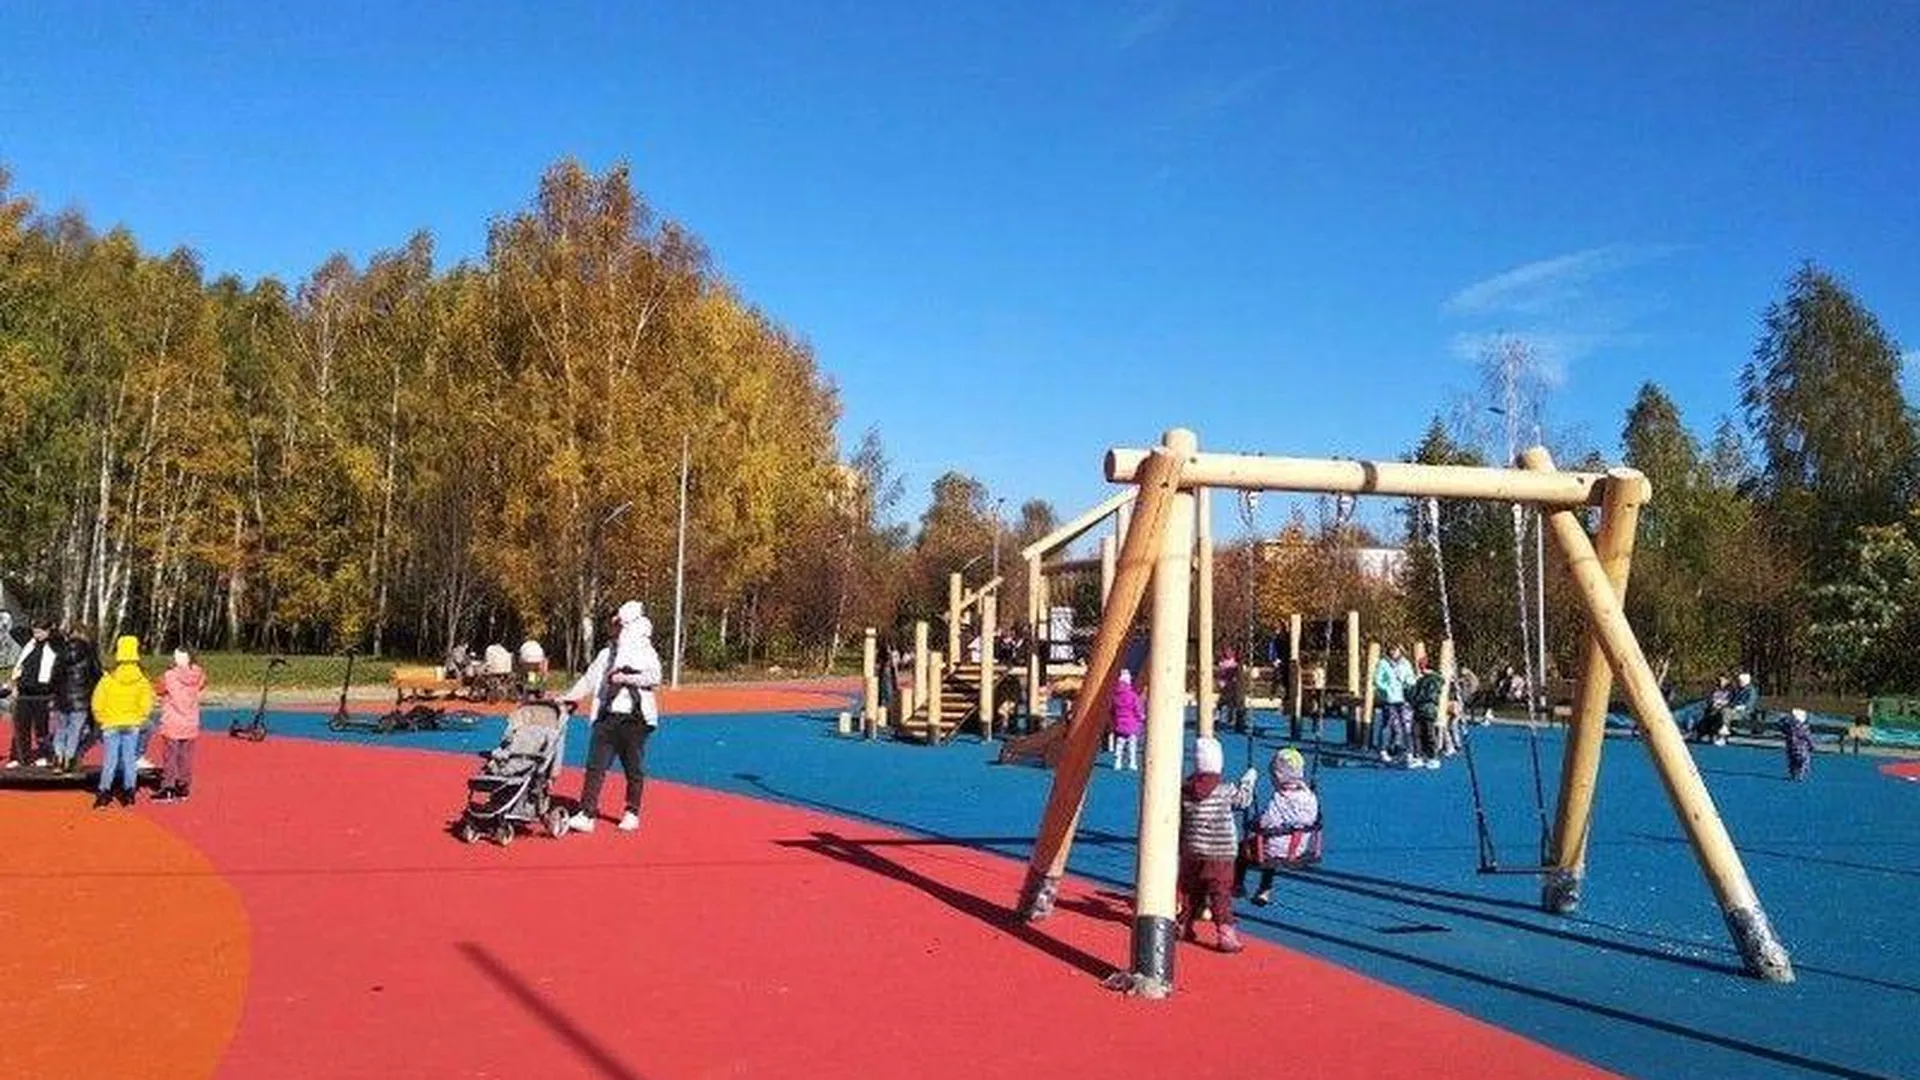 Благоустройство игровой зоны для детей завершилось в парке «Липовая роща» в Электроуглях